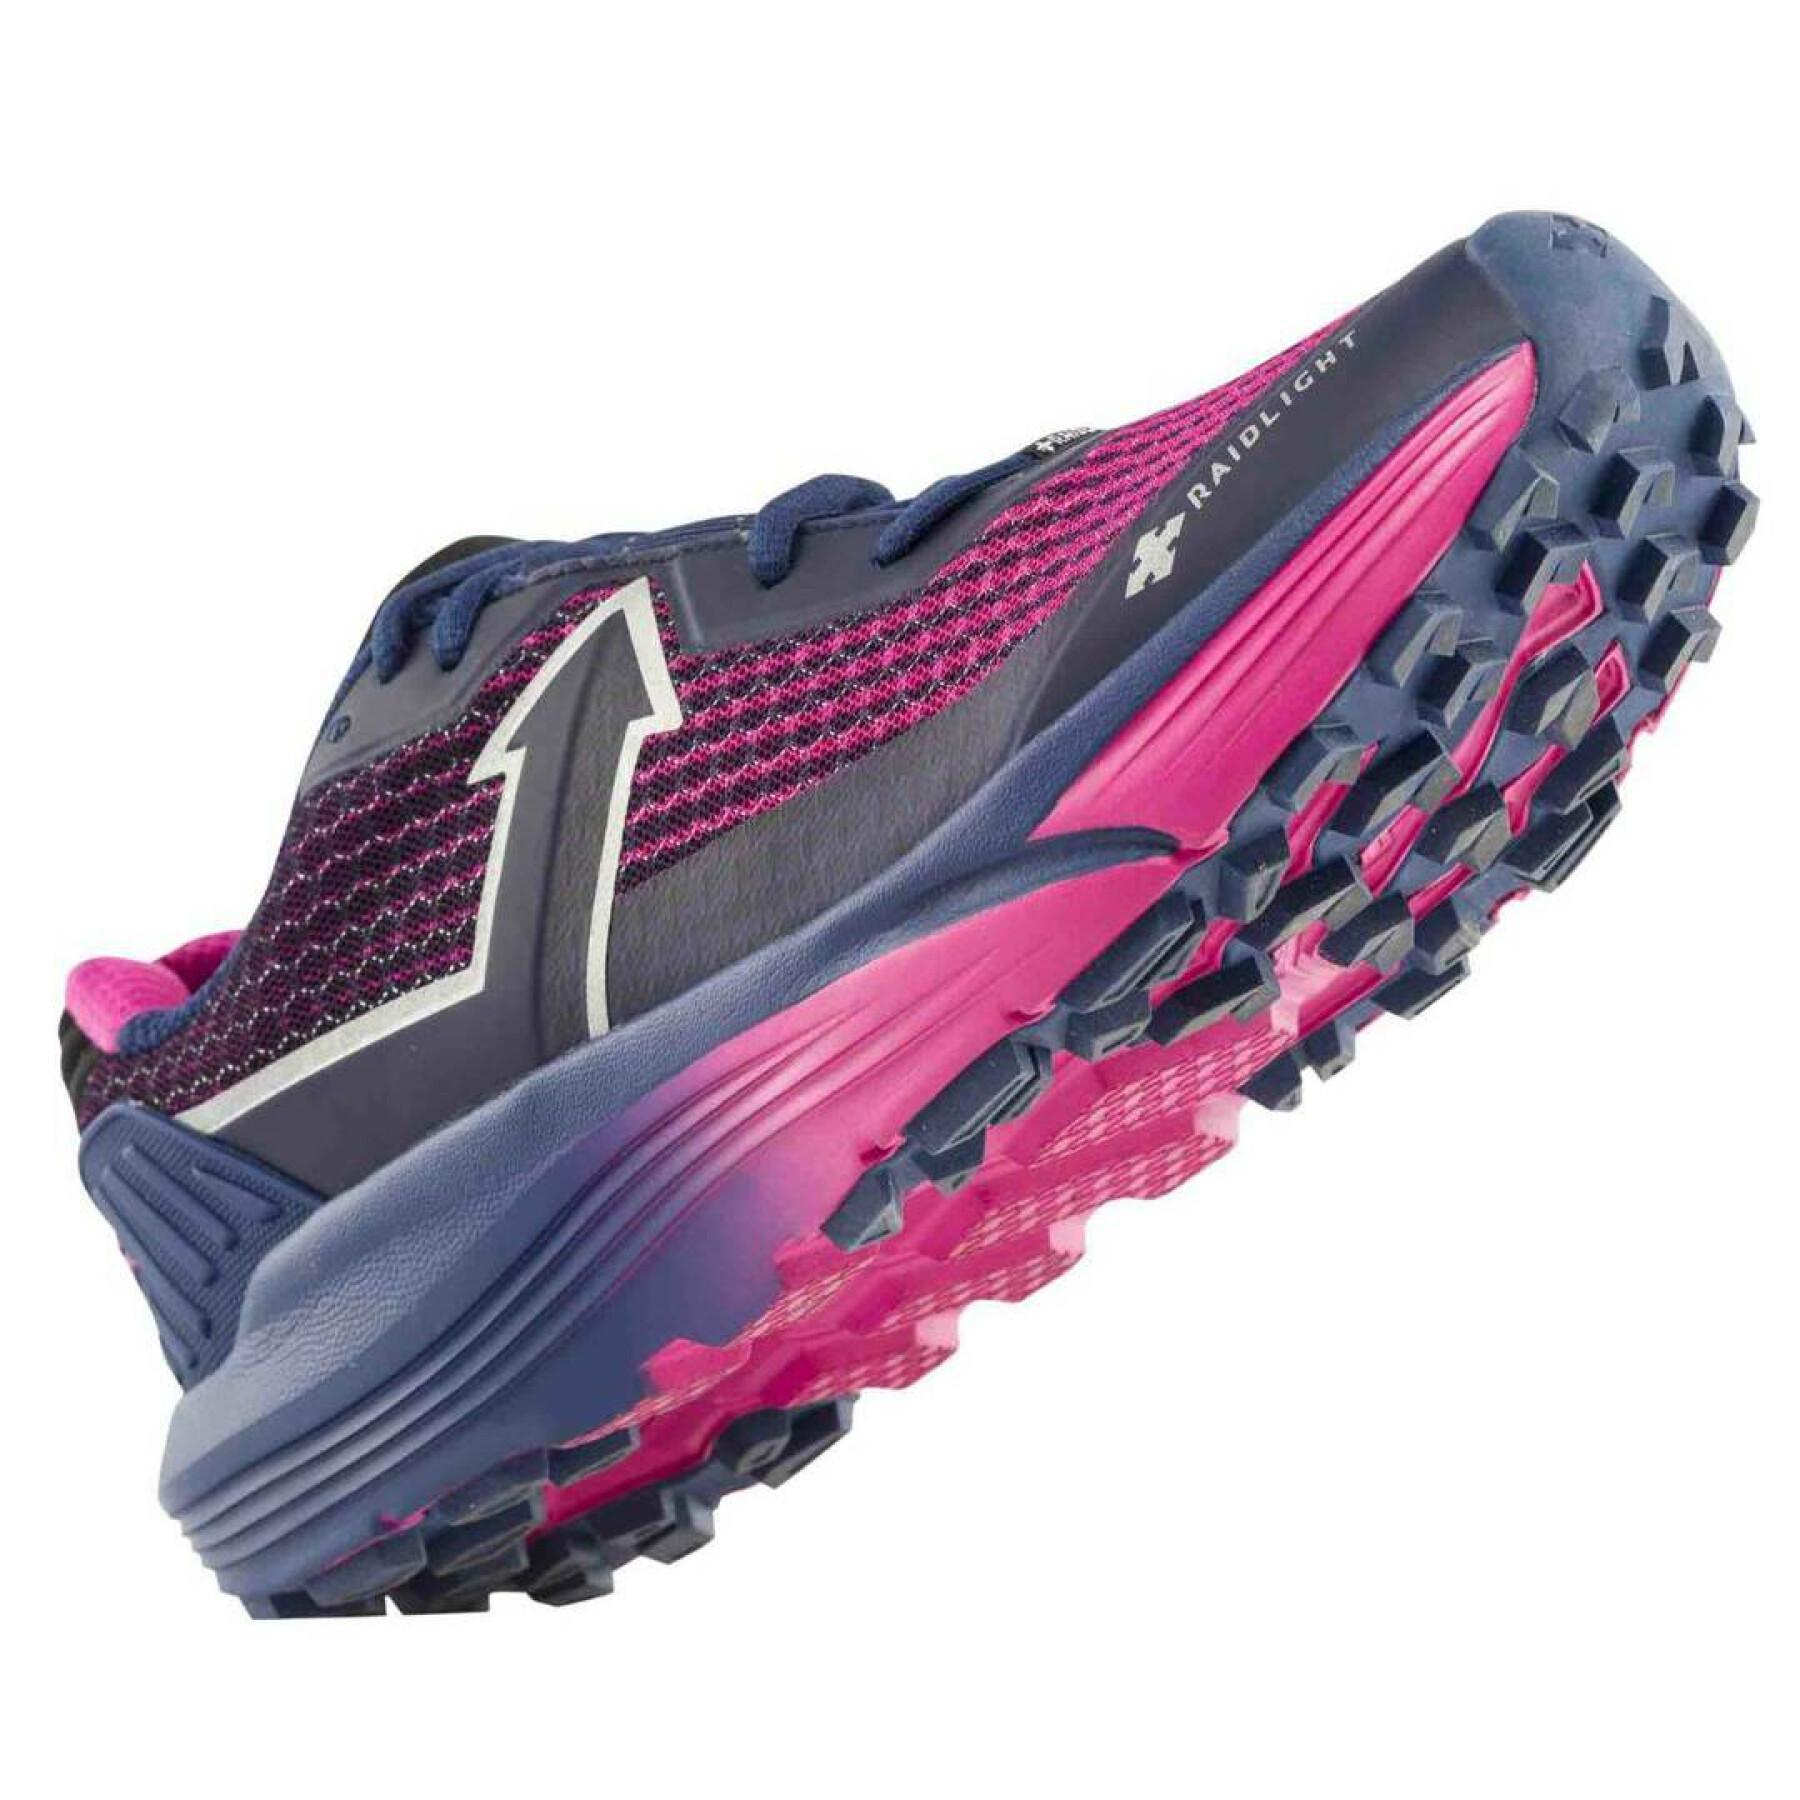 Chaussures de running femme RaidLight responsiv ultra